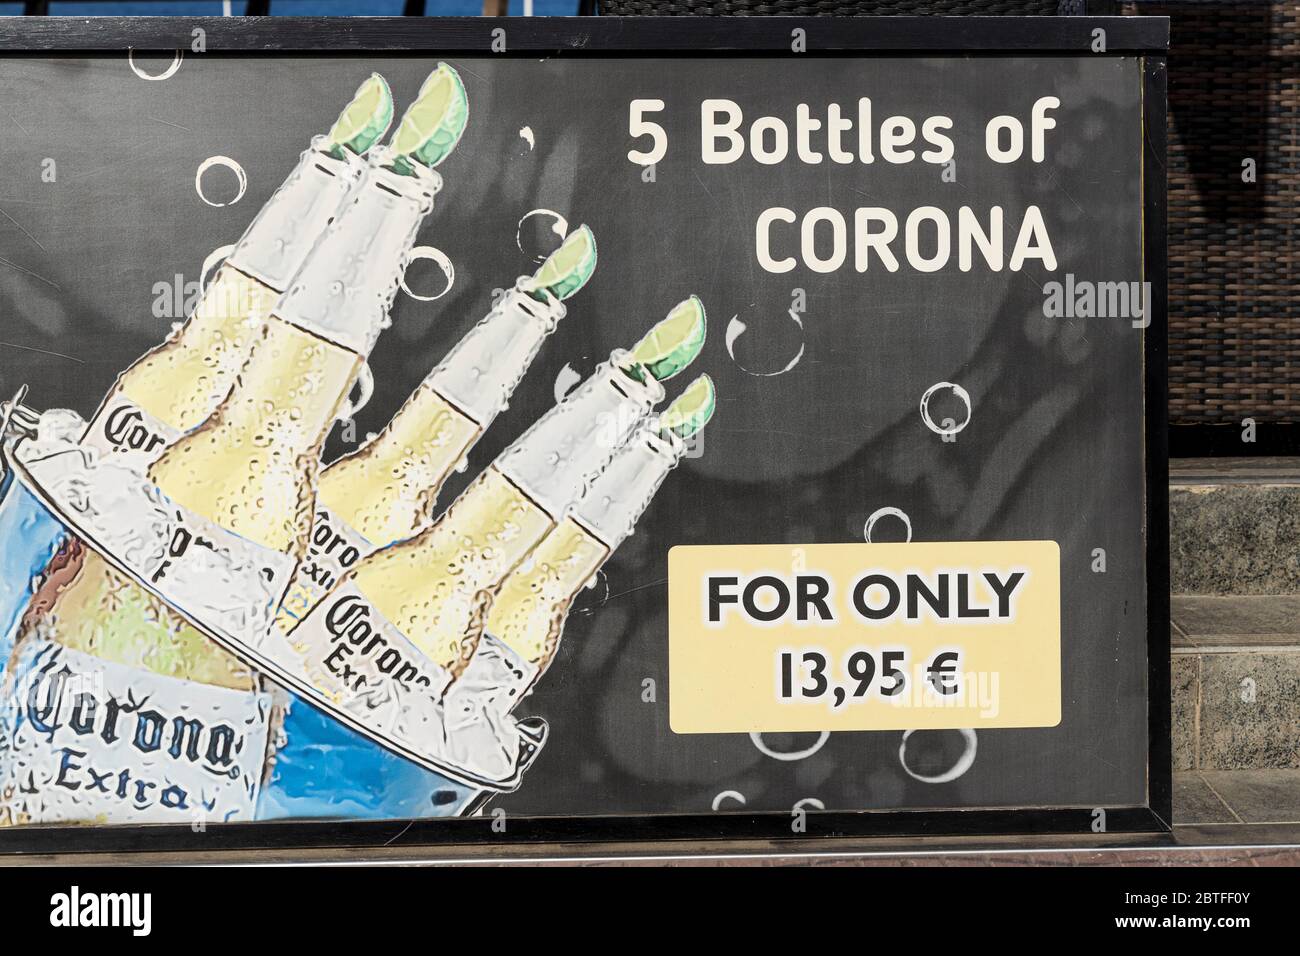 Anzeige für Corona Bierflaschen Angebot am ersten Tag der zweiten Phase der Deeskalation, Covid19, Coronavirus, Notstand, Costa Adeje, Teneriffa, Stockfoto